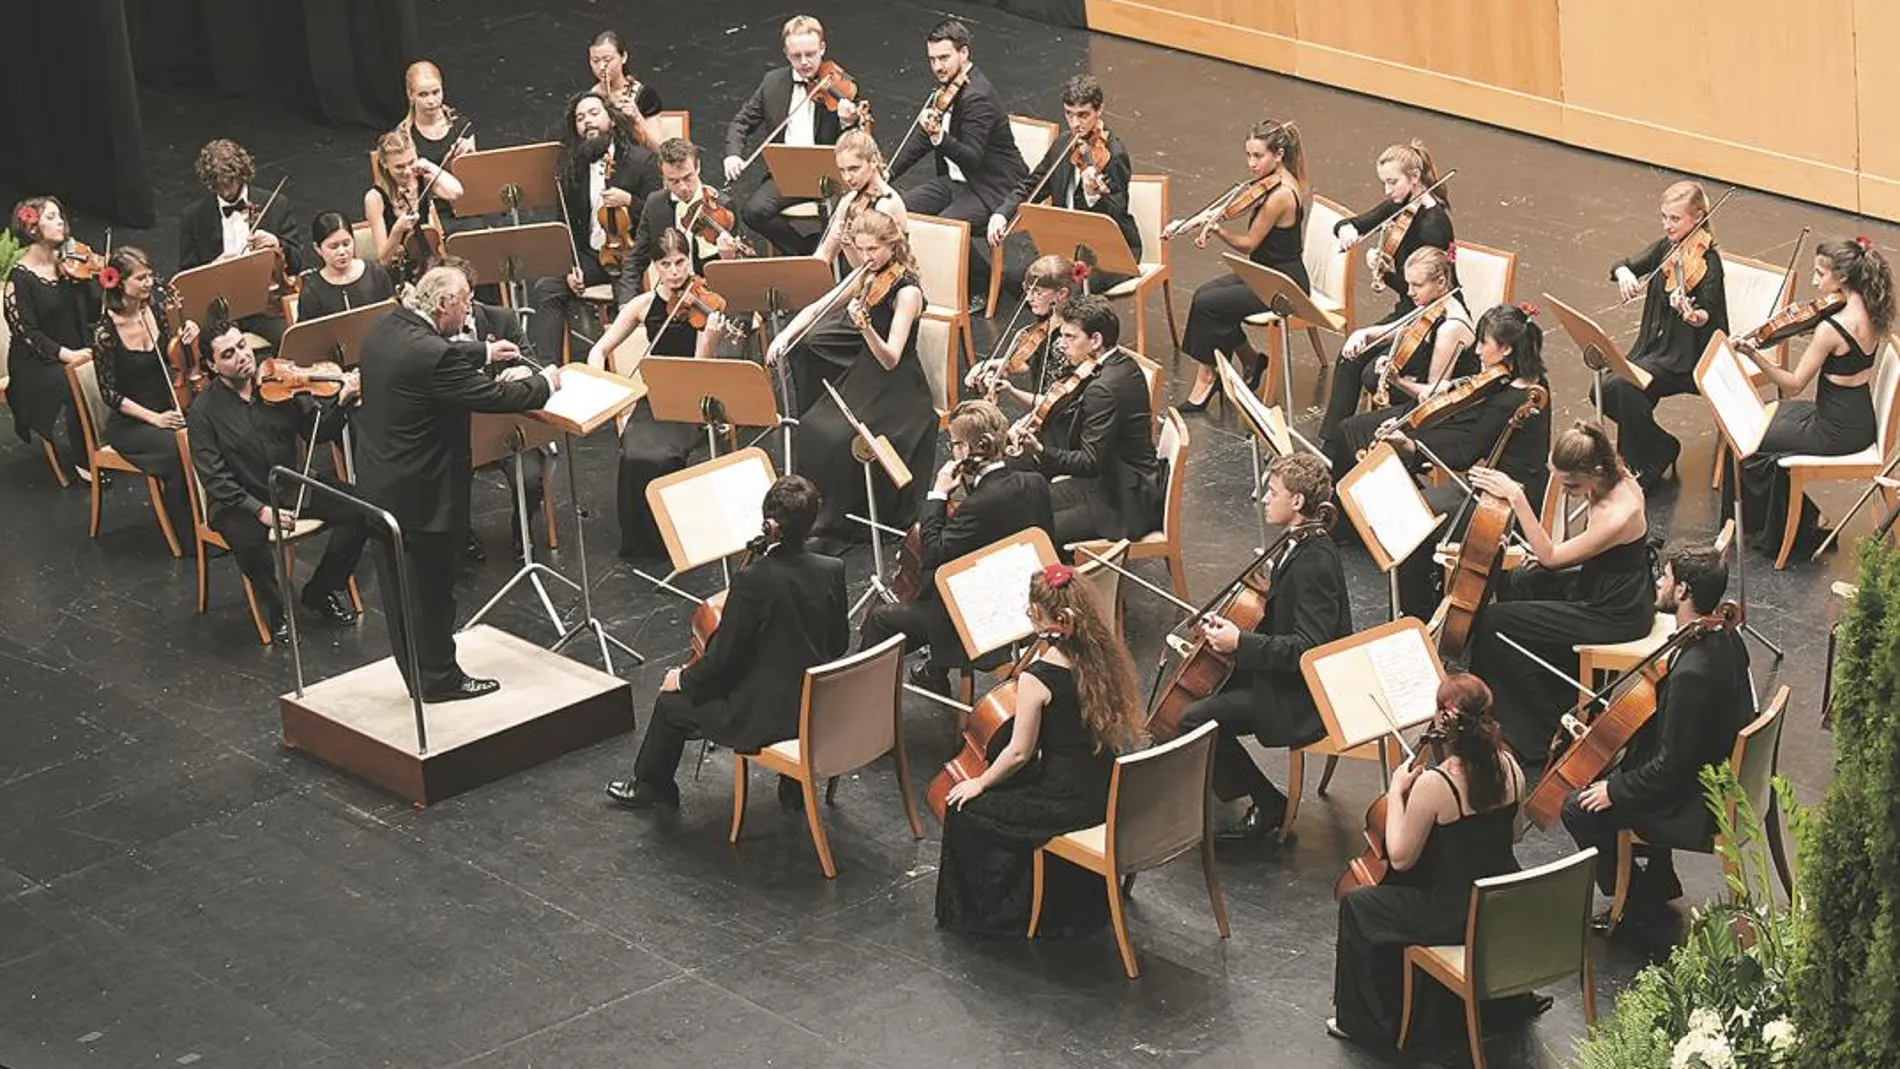 Viesgo colabora con diversas fundaciones e instituciones para la promoción de la música y la formación de jóvenes maestros